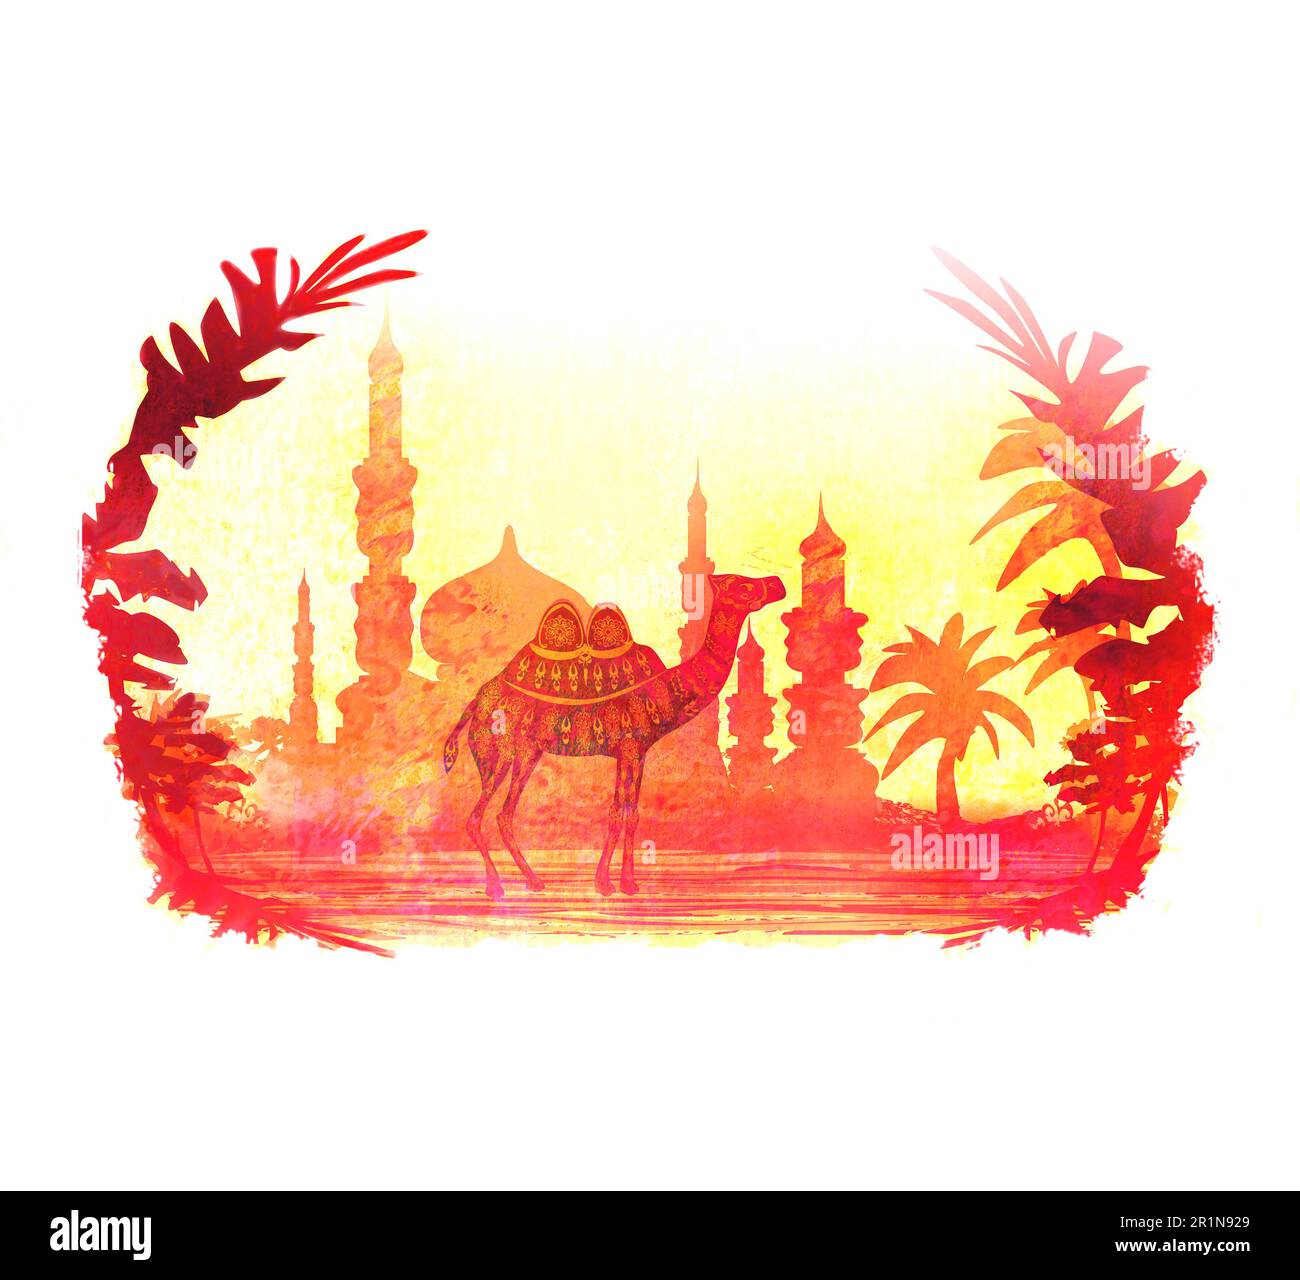 Promenade à dos de chameau au lever du soleil - carte artistique grunge Banque D'Images